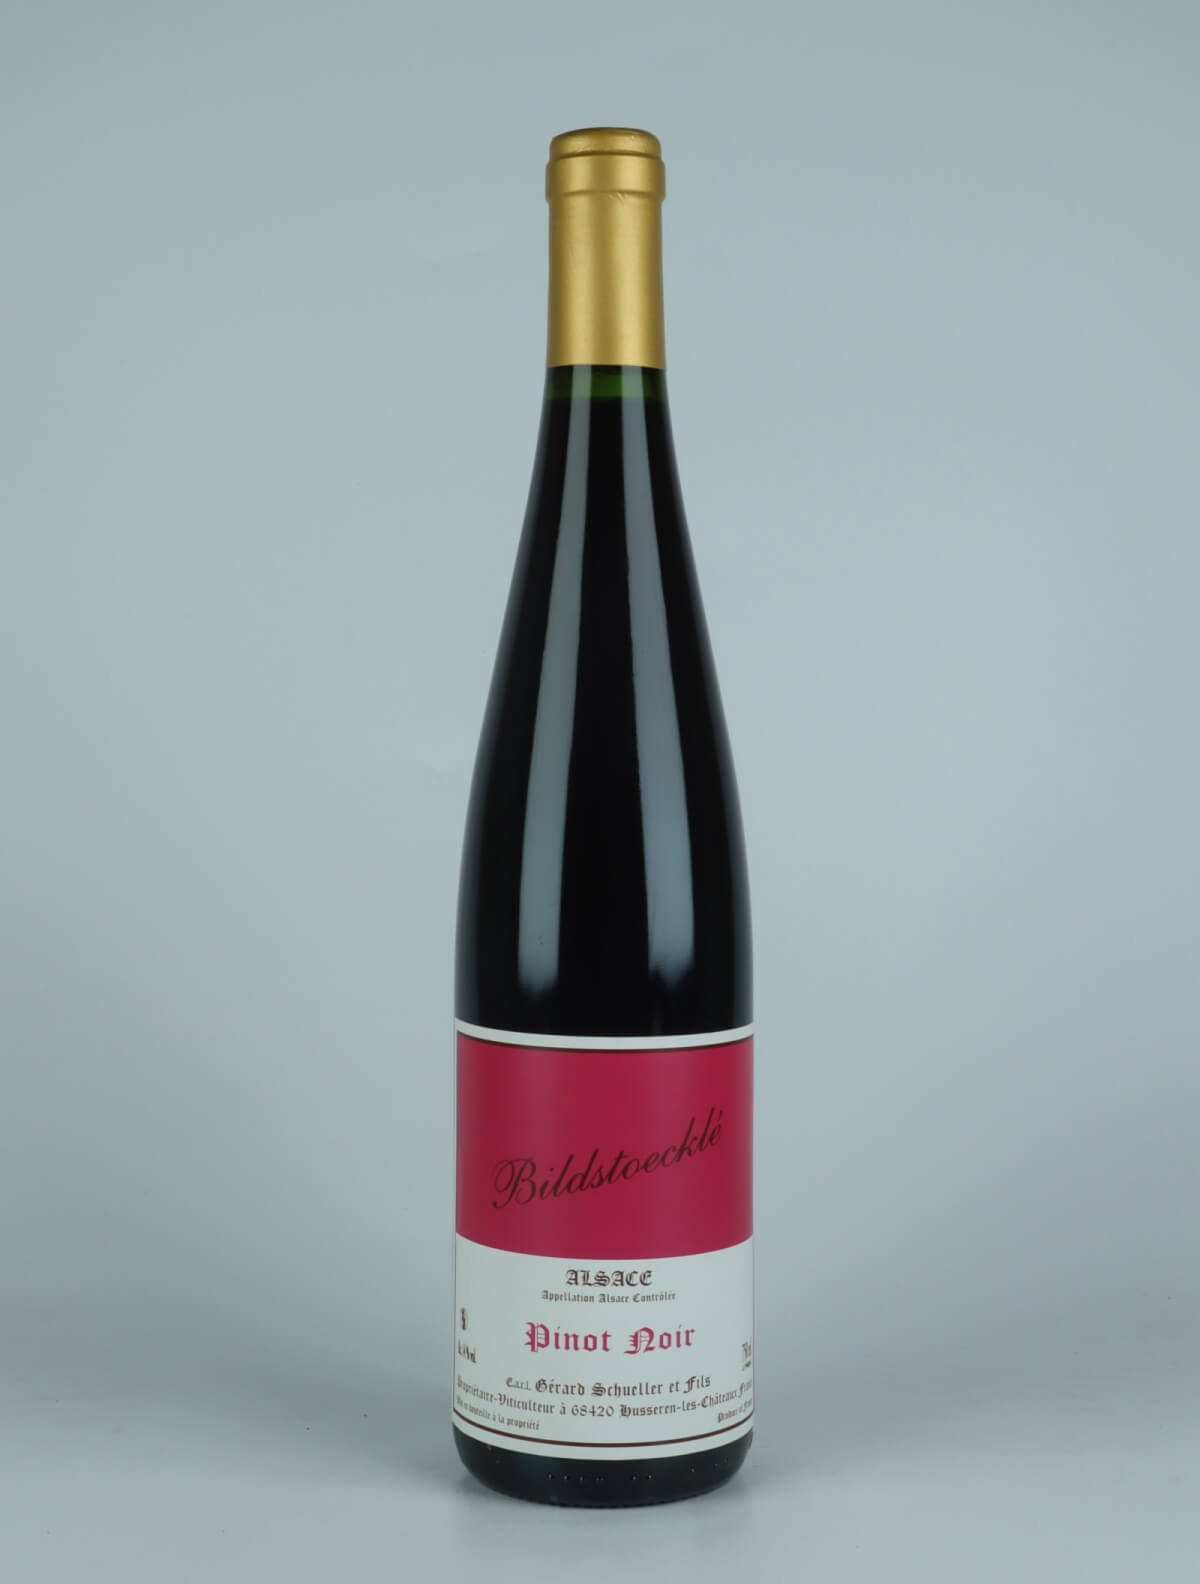 A bottle 2019 Pinot Noir - Bildstoecklé Red wine from Gérard Schueller, Alsace in France